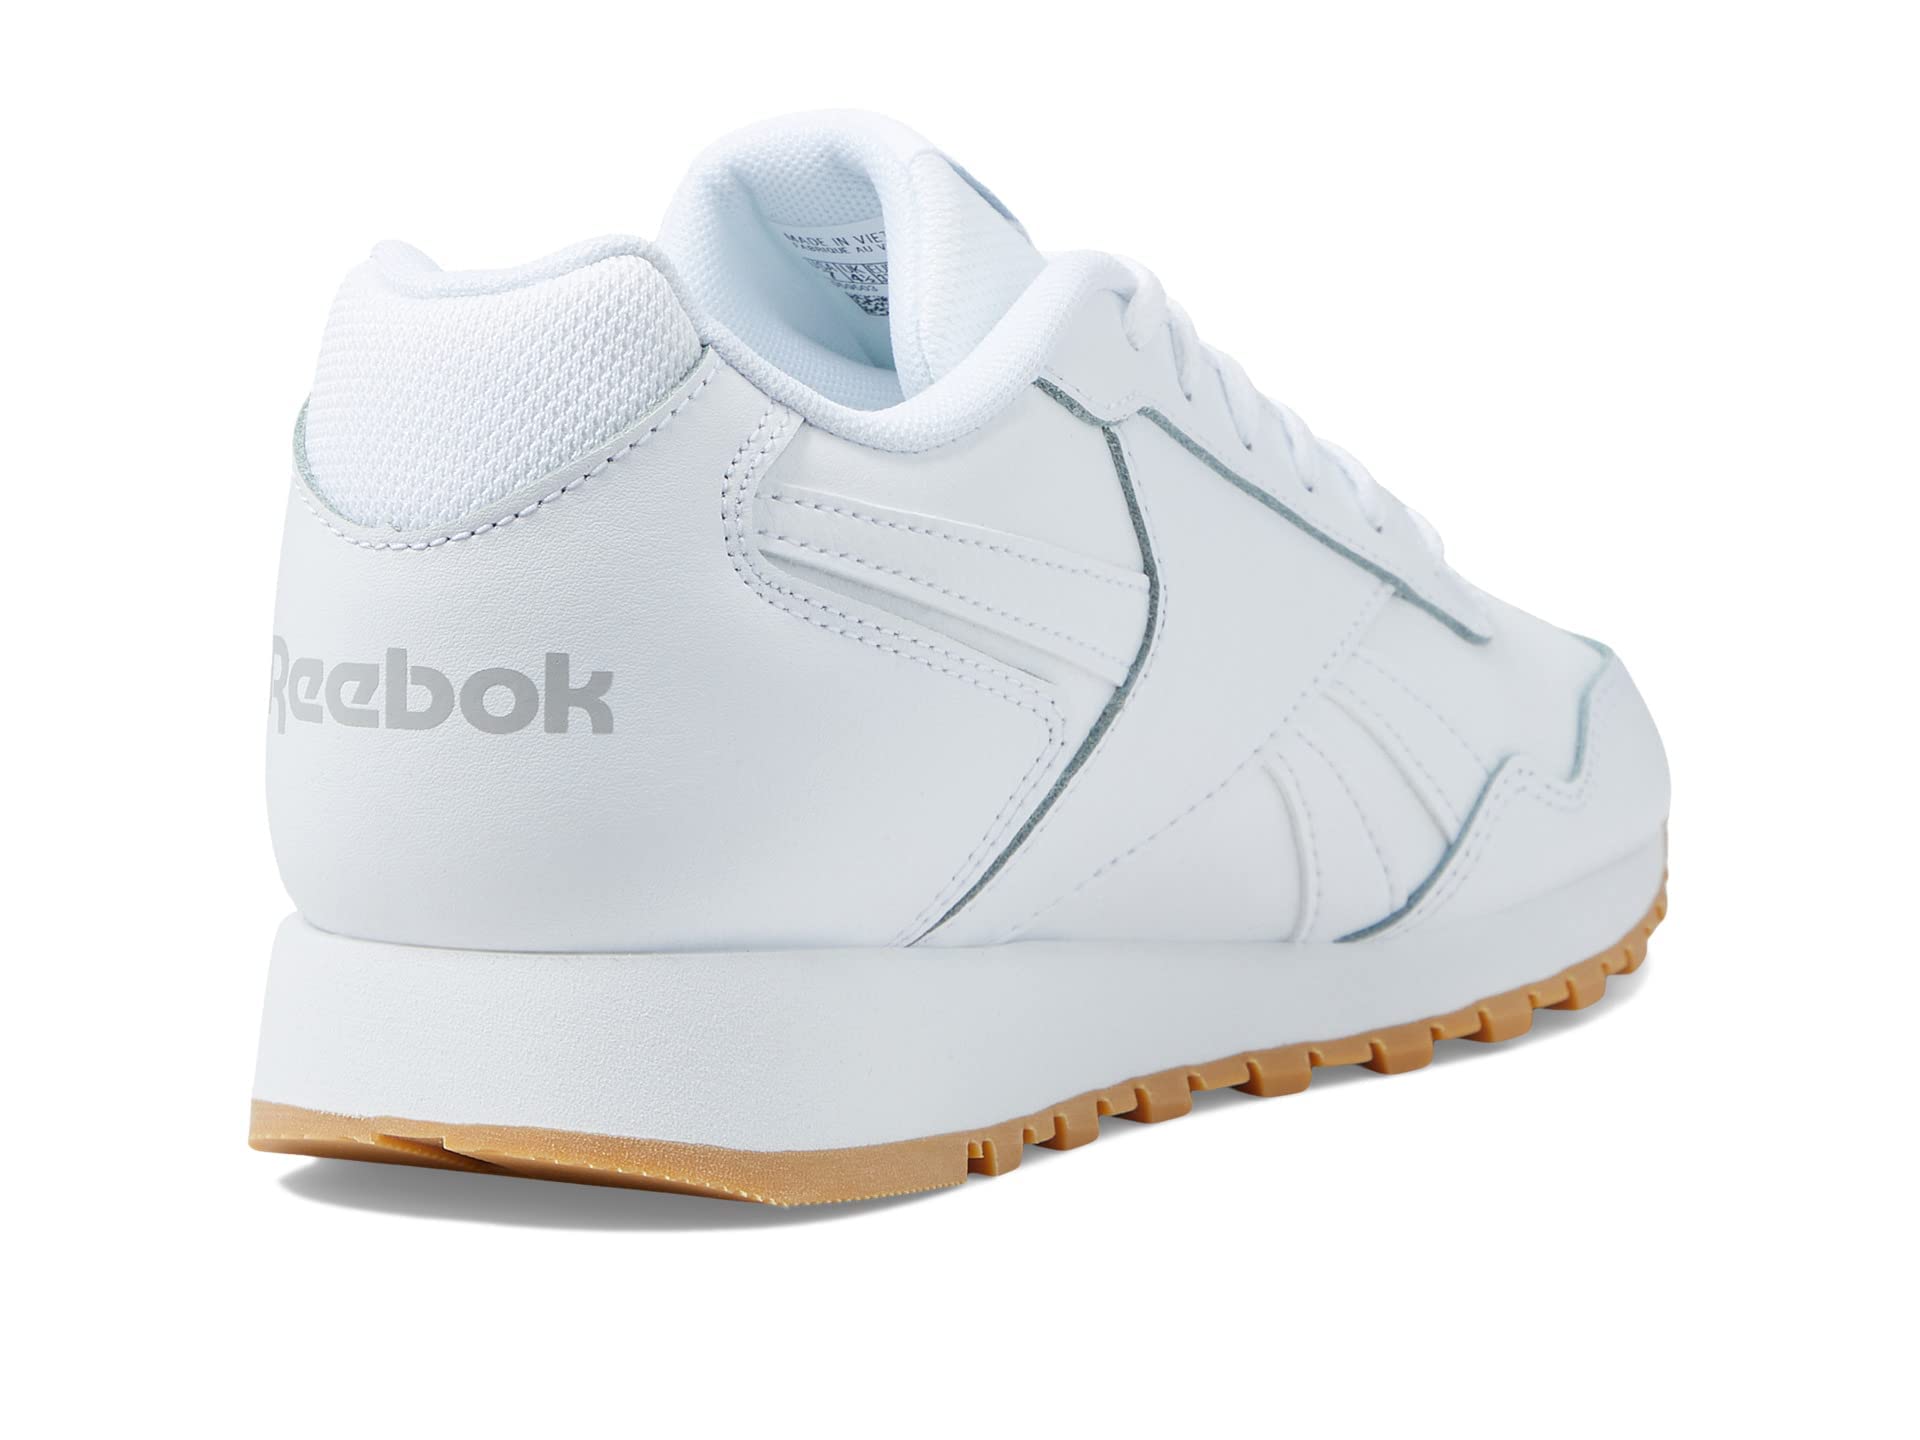 Reebok Women's Glide Sneaker